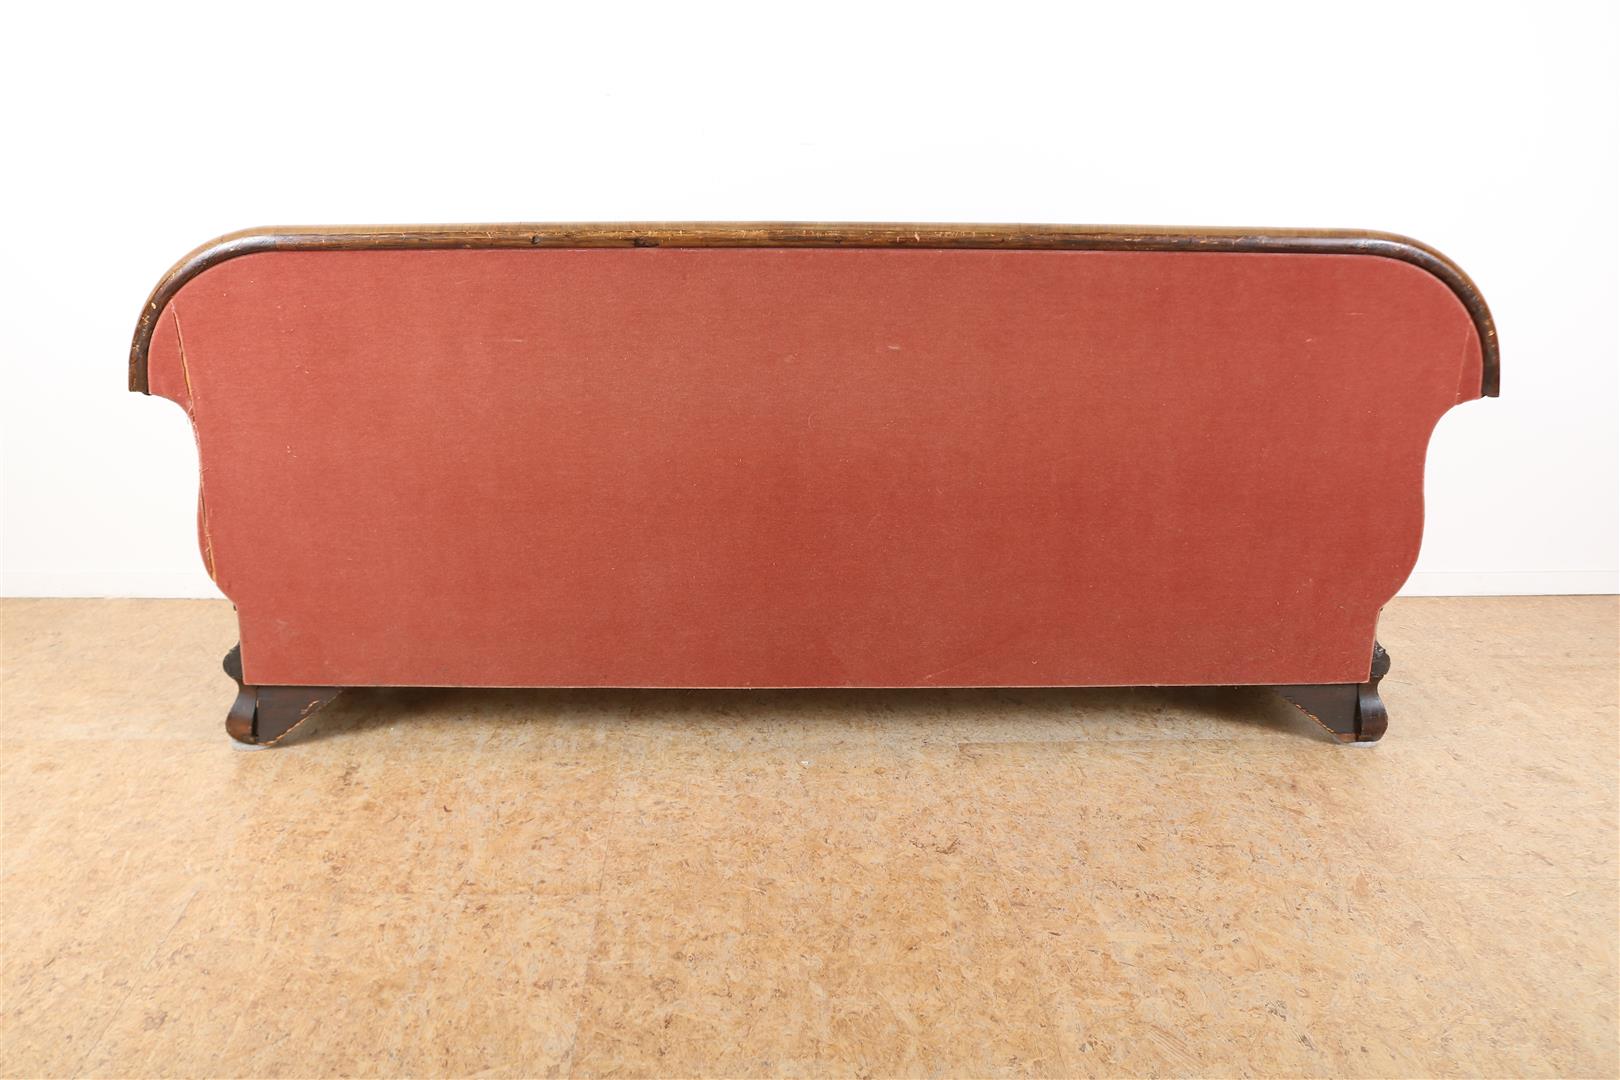 Mahogany Biedermeier sofa upholstered in pink velvet, 19th century. - Image 5 of 5